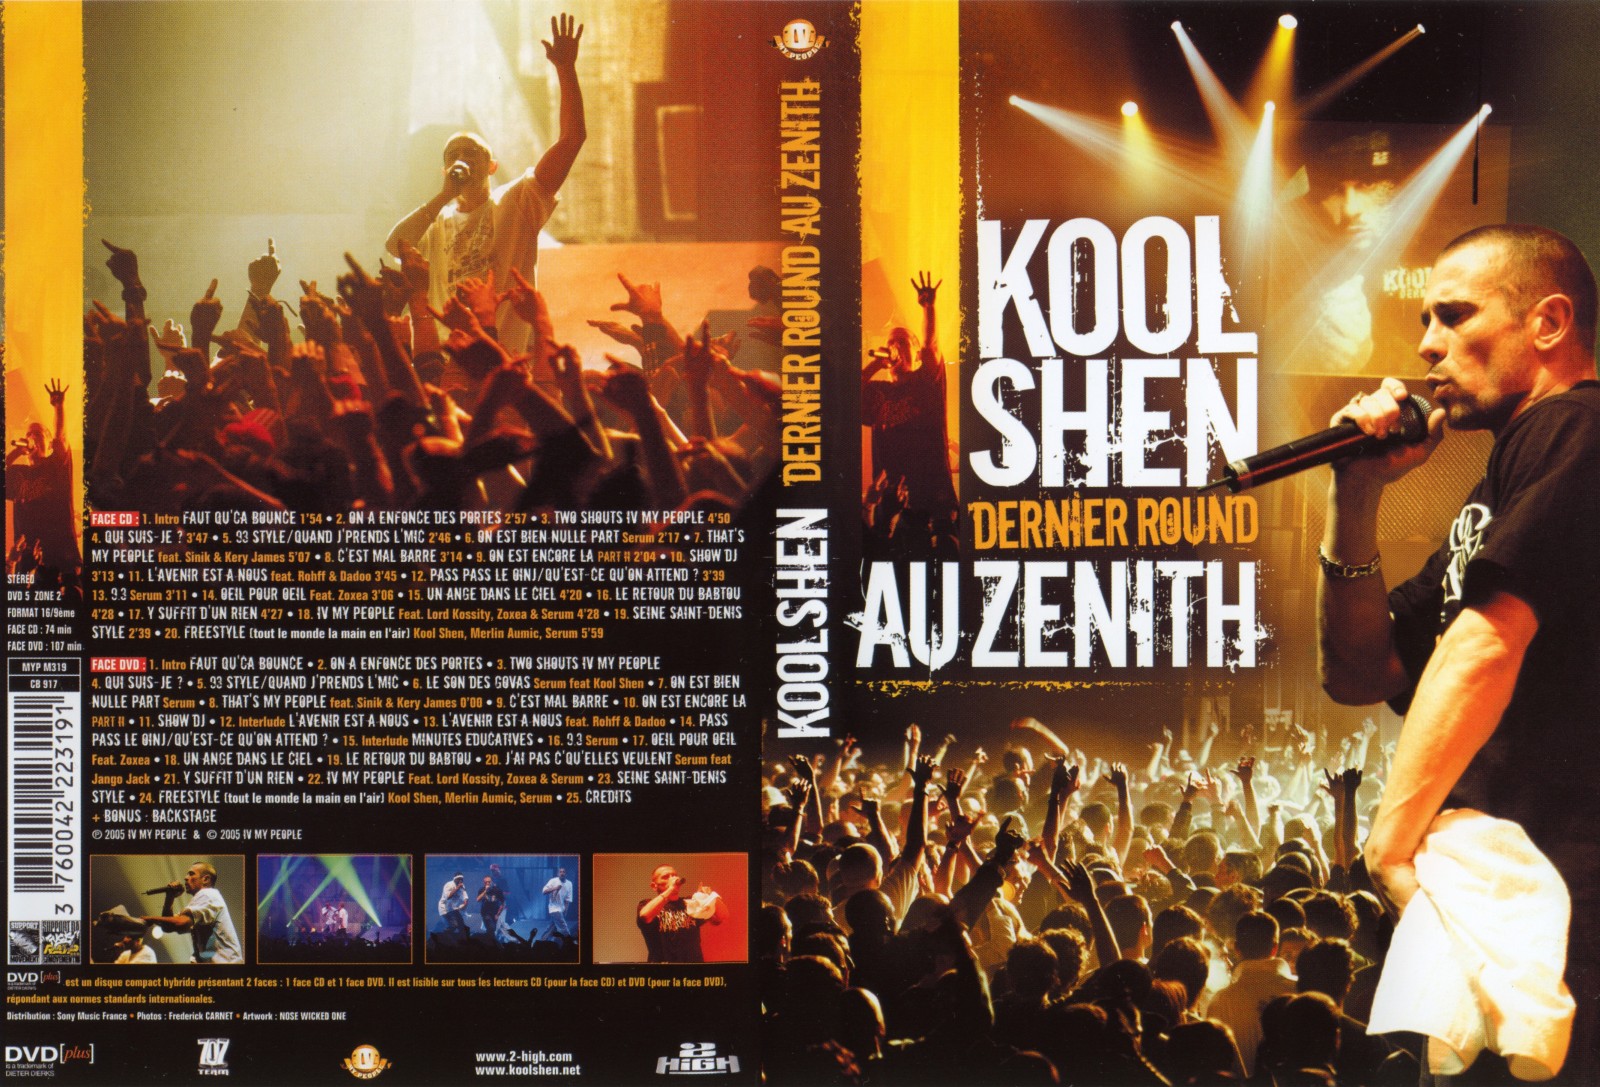 Jaquette DVD Kool Shen - Dernier round au Zenith